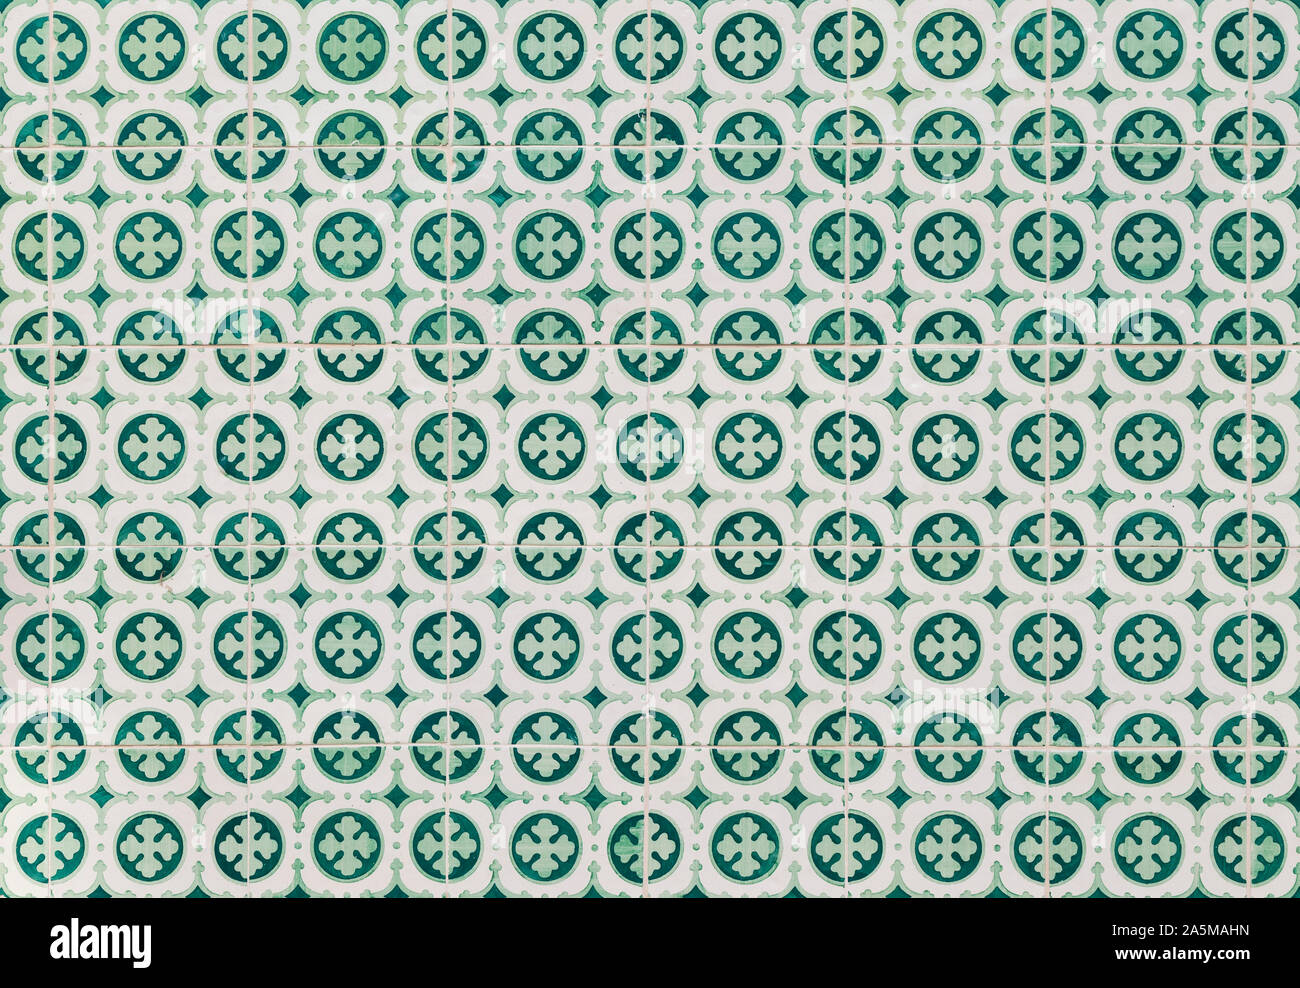 In der Nähe von Grün keramische Kacheln (AZULEJOS) in Lissabon, Portugal. Hochauflösende full frame strukturierten Hintergrund. Stockfoto